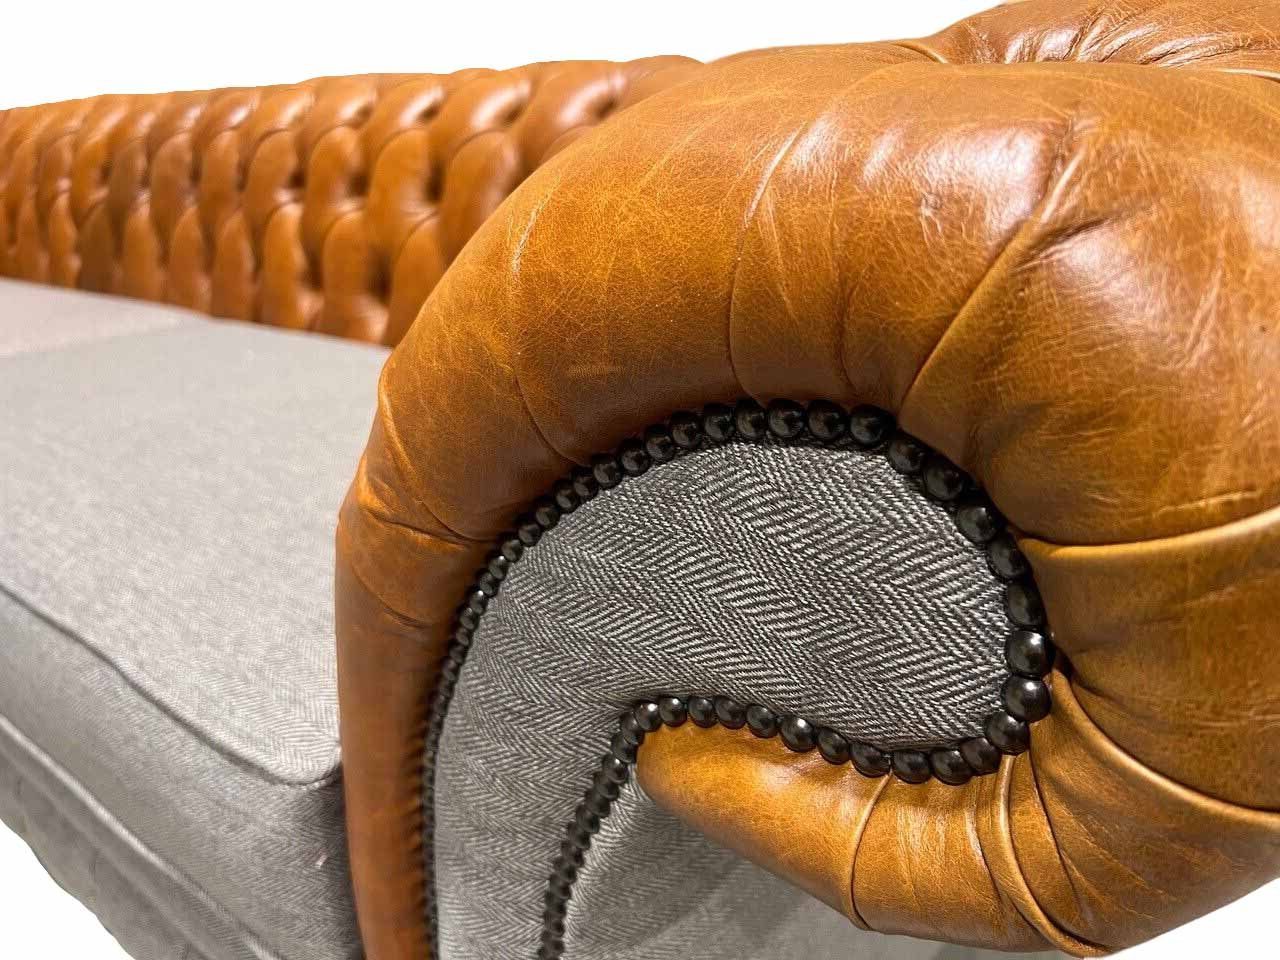 Design Sofa Klassisch Couch JVmoebel Chesterfield-Sofa, Wohnzimmer Chesterfield Sofas